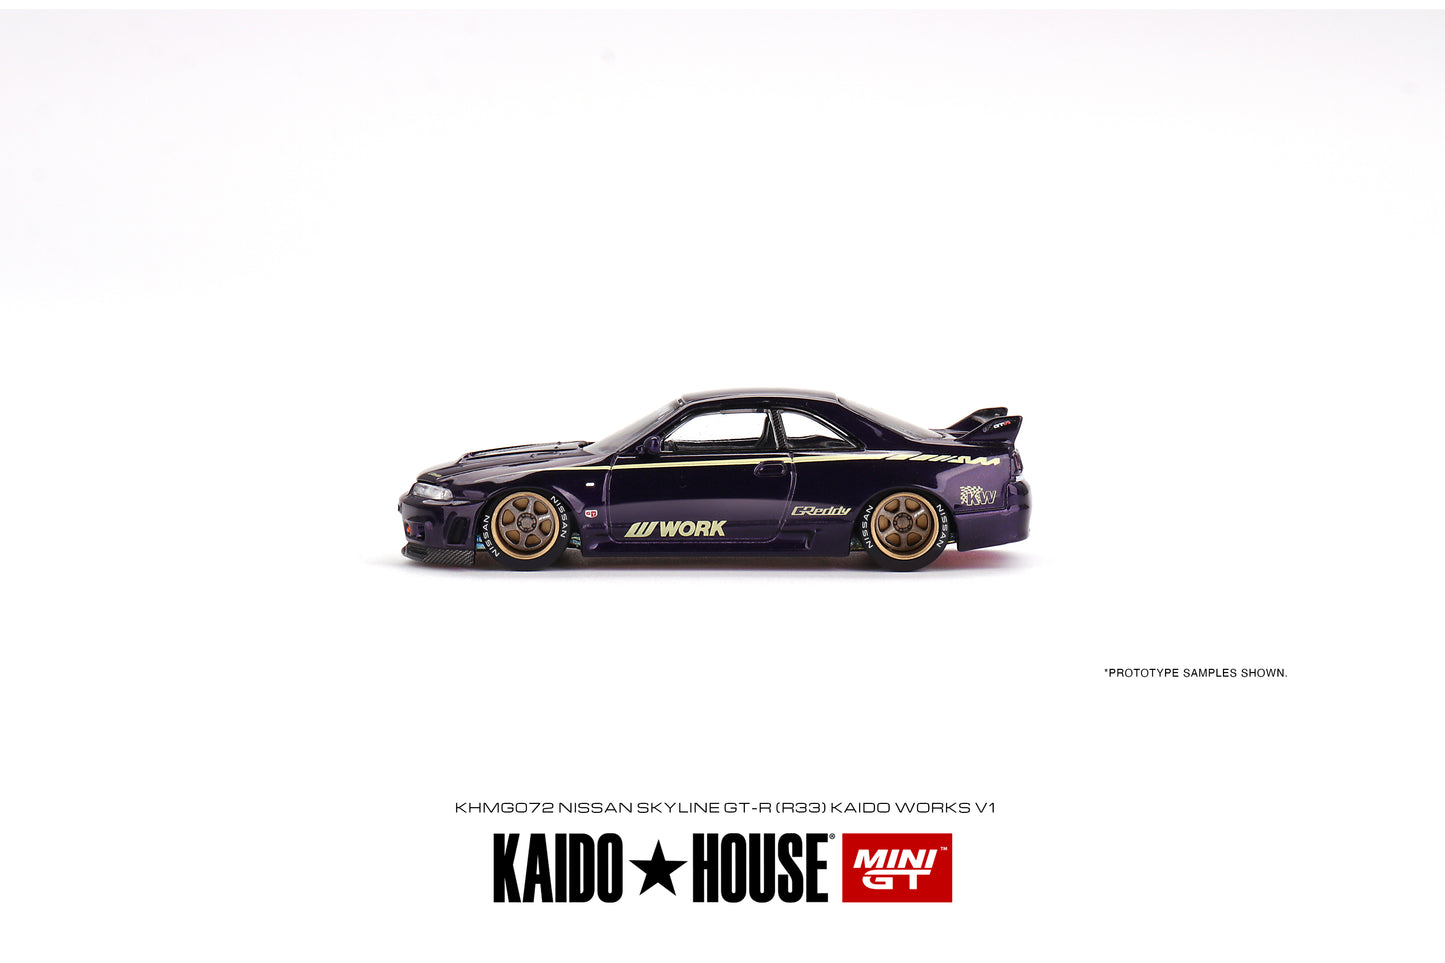 Mini GT x Kaido House No.072 Nissan Skyline GT-R (R33) Kaido Works V1